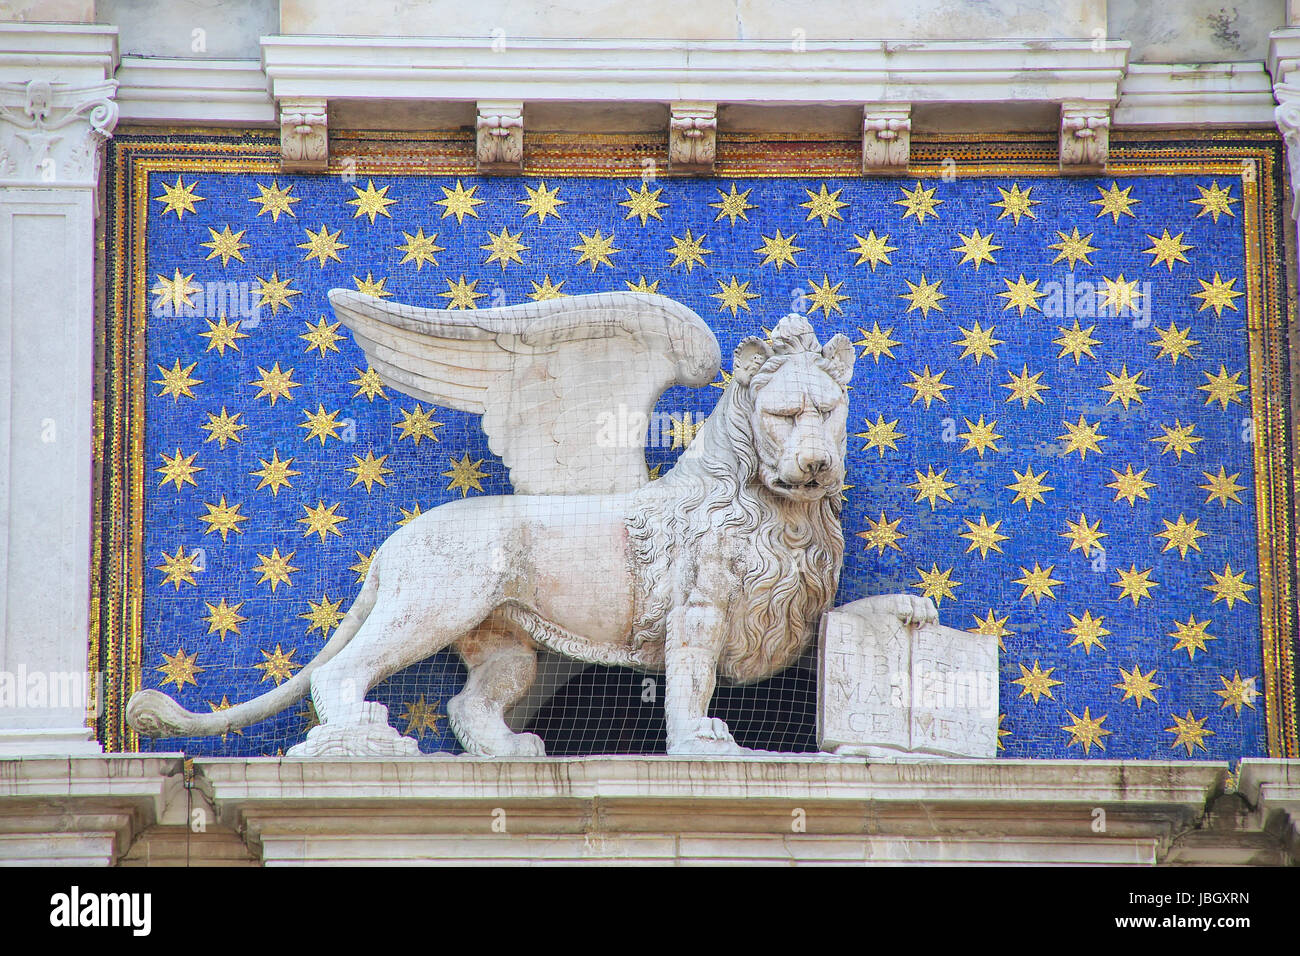 Statua del leone alato sulla torre dell'Orologio di Piazza di San Marco a Venezia, Italia. Leone alato tenendo una Bibbia è il simbolo della città di Venezia. Foto Stock